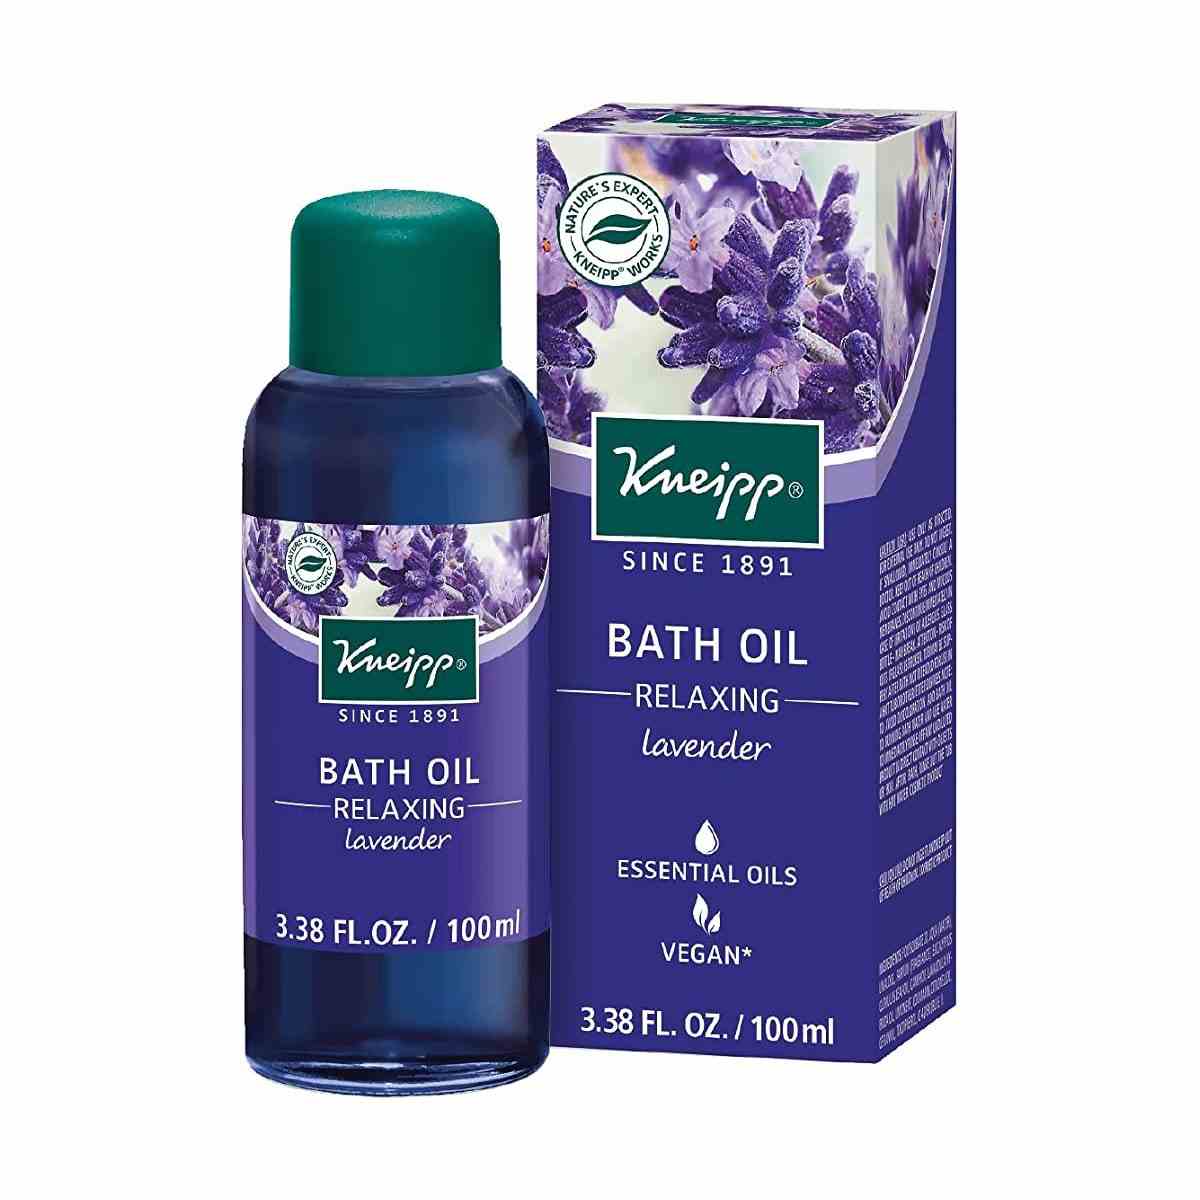 Kneipp Relaxing Lavender Herbal Bath Oil blaue Flasche mit grüner Kappe und Schachtel mit Lavendel darauf auf weißem Hintergrund